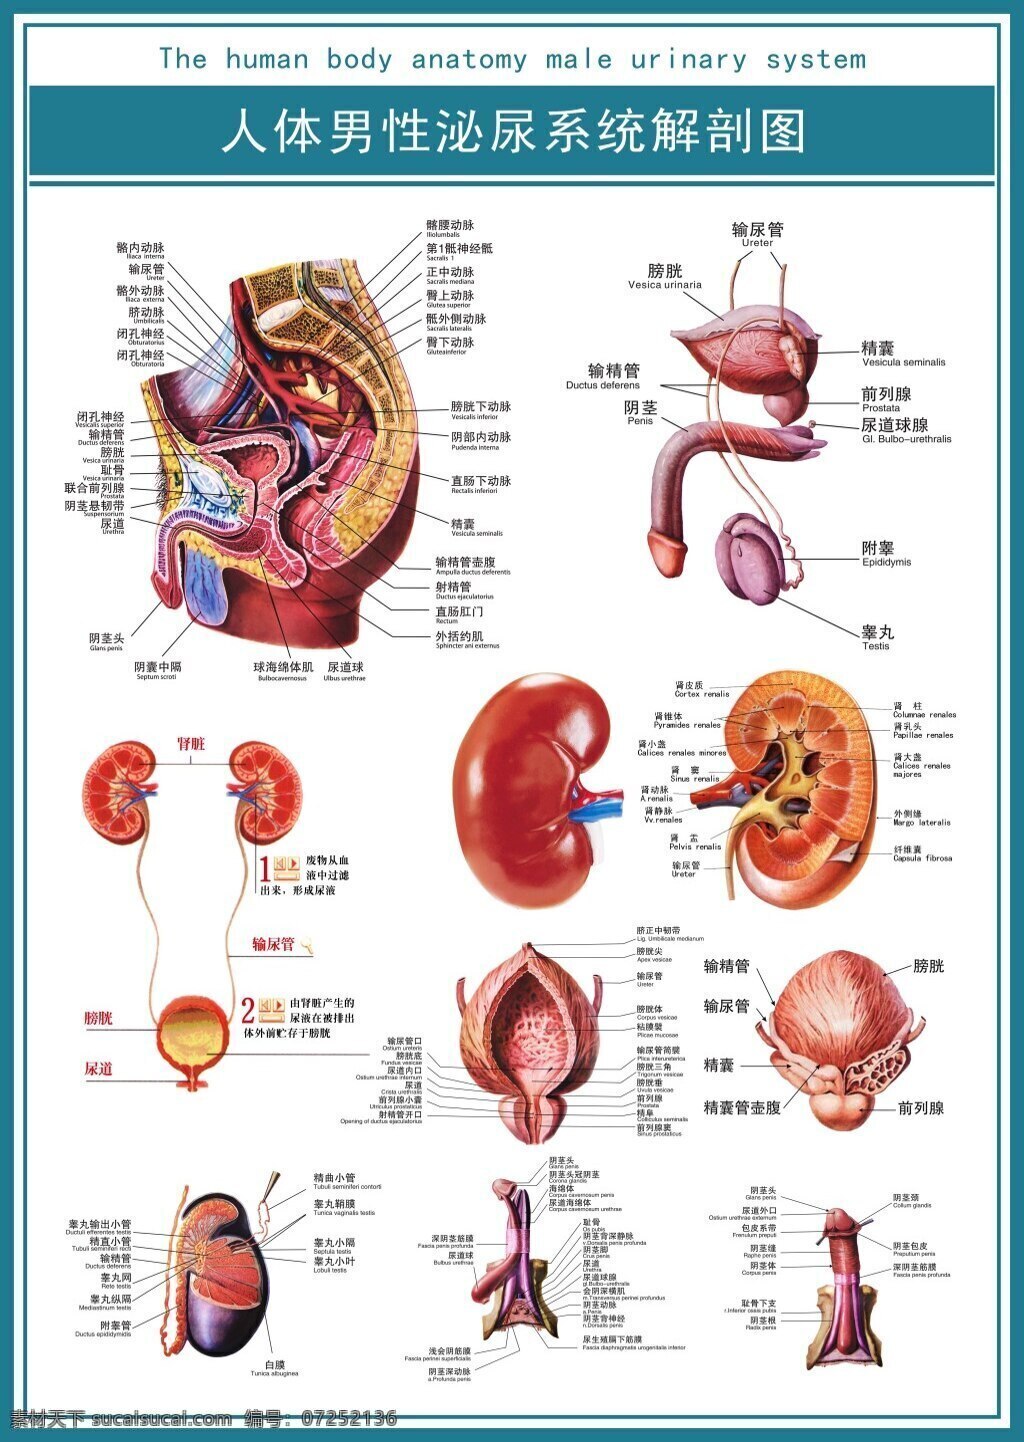 医学 展板 人体 男性 泌尿 系统 解剖 图 高清 解剖图 高清psd 白色